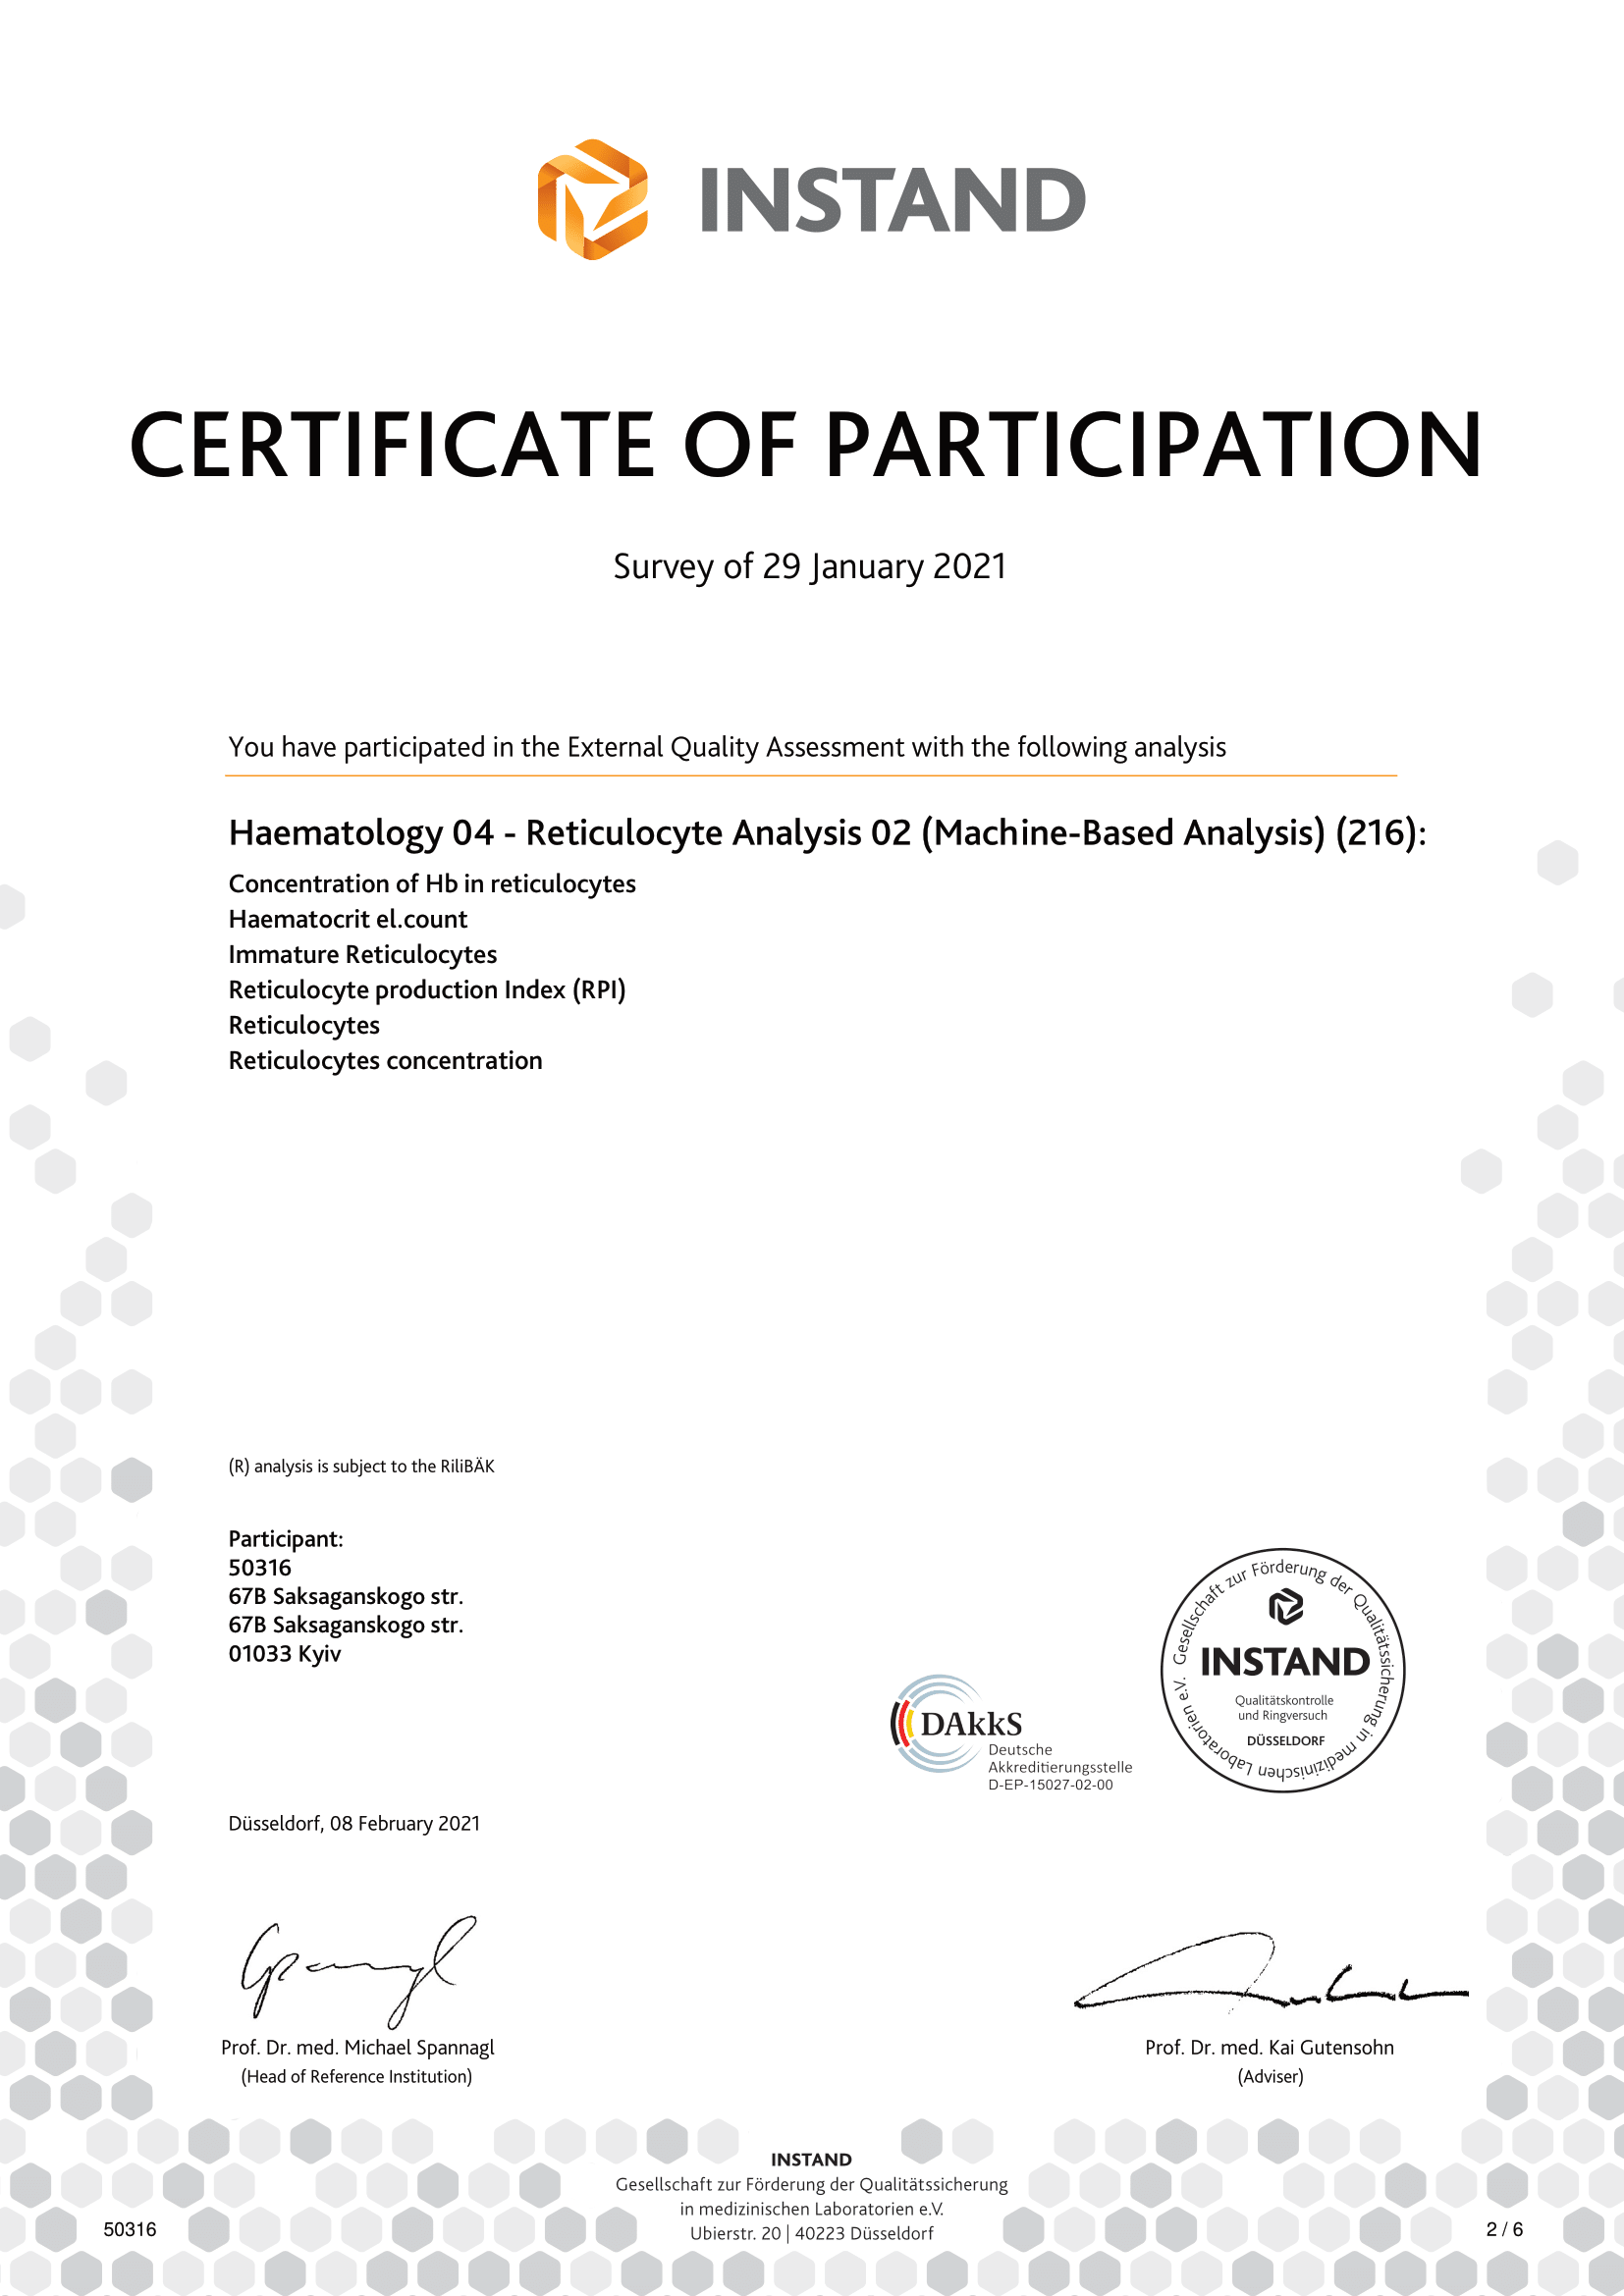 Фото - Сертифікат про успішне проходження зовнішньої оцінки якості по системі INSTAND  ( Німеччина). Haematology- Reticulocyte Analysis 